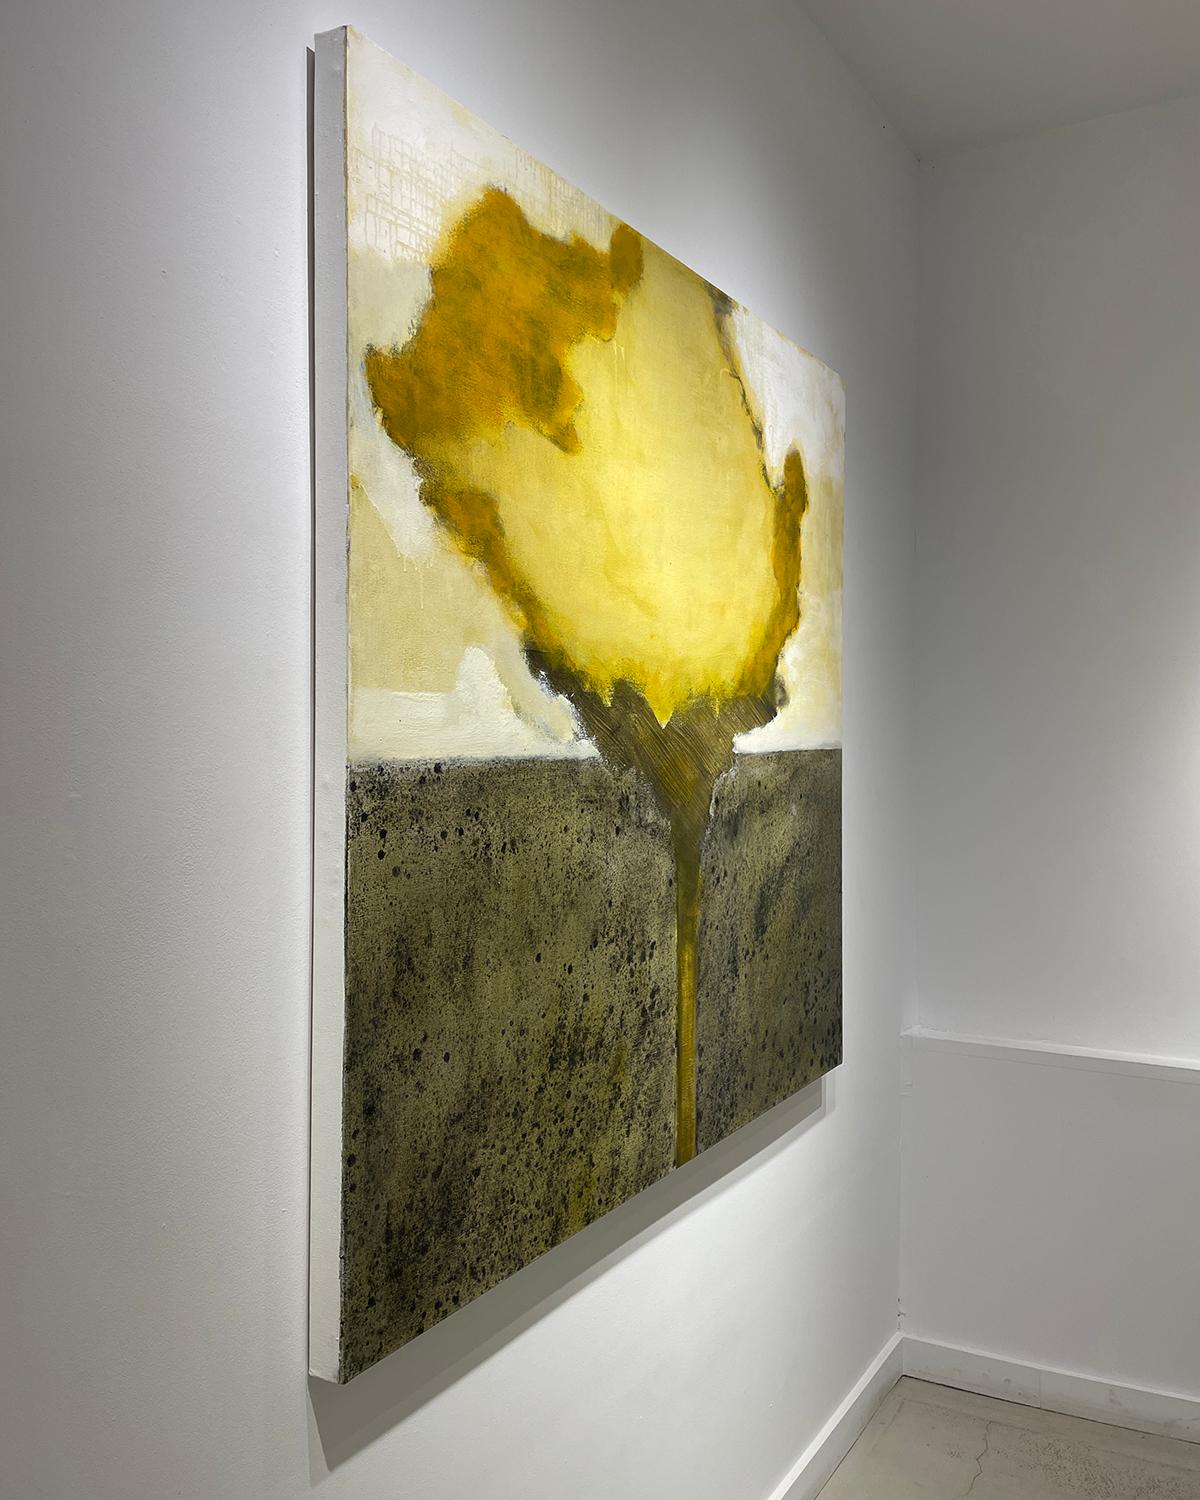 Grand paysage abstrait avec, au premier plan, une fleur jaune chaud peinte de manière gestuelle
